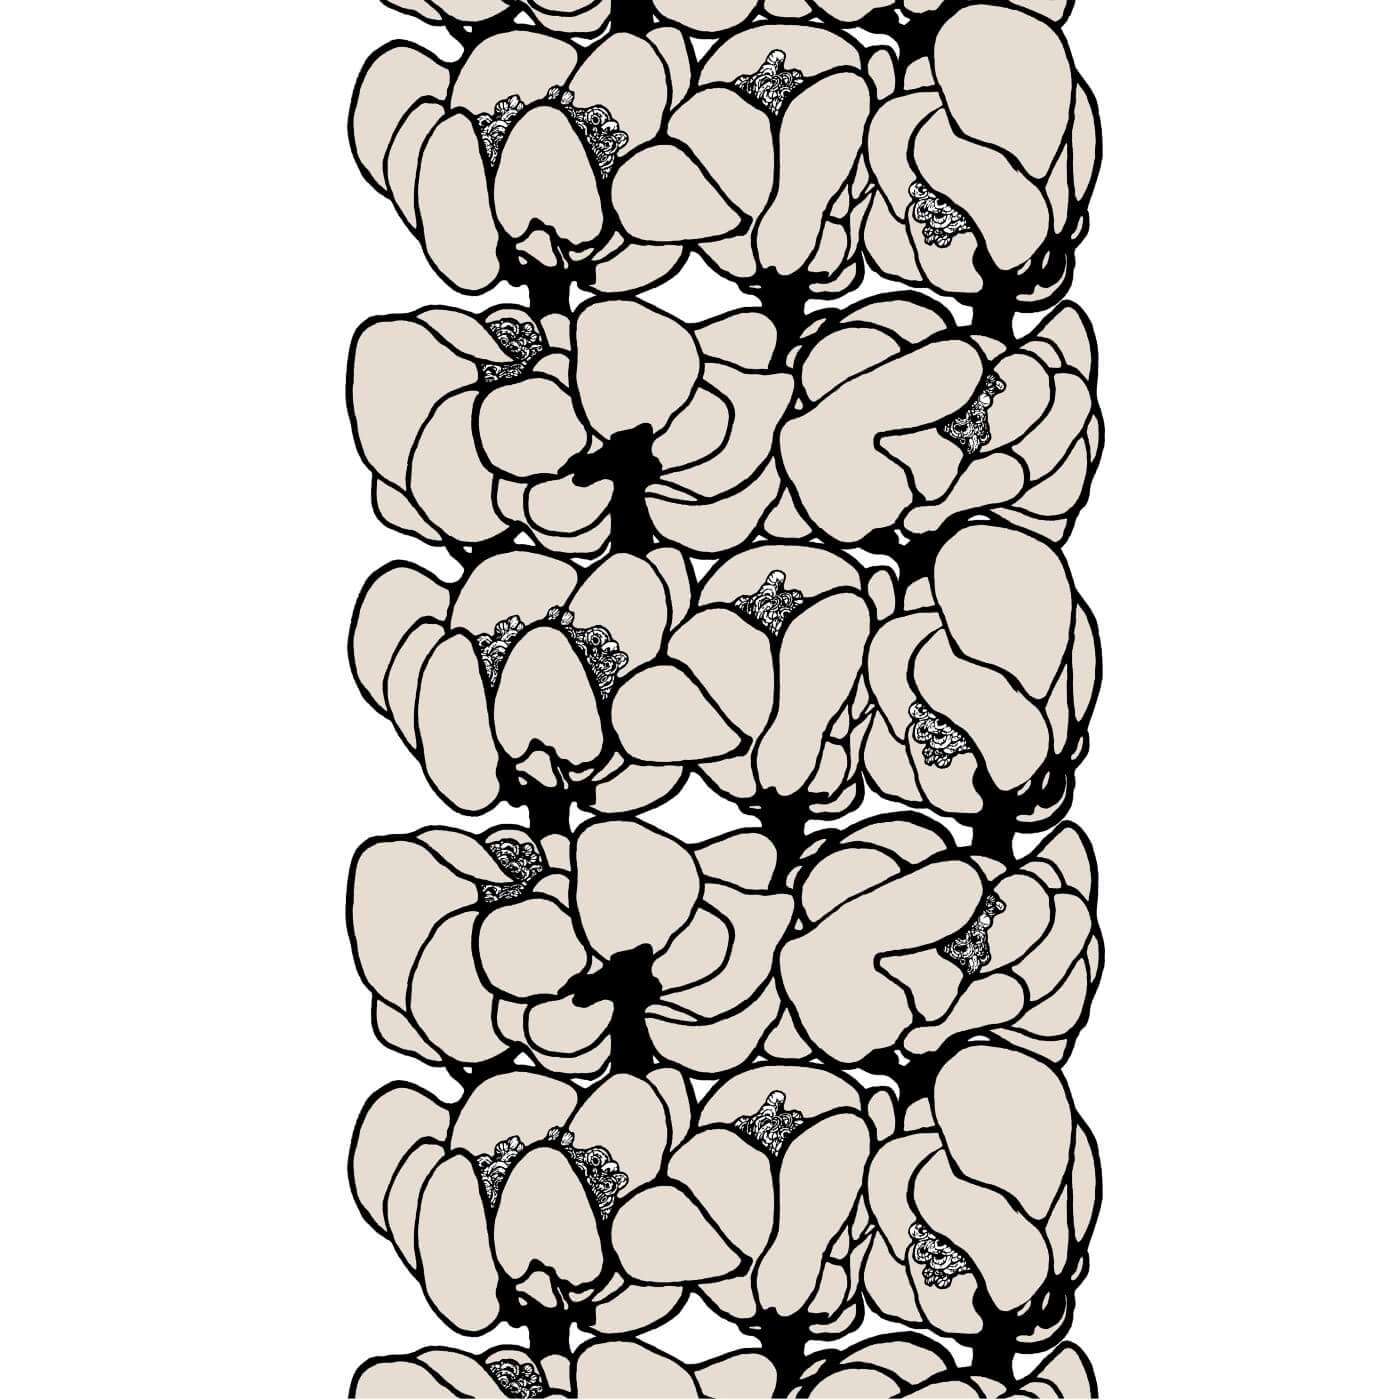 Zasłony design MAKEBA. Wzór nowoczesnej zasłony do salonu 140×250 w duże kwiaty w odcieniu koloru beżowego i czarnego. Styl skandynawski